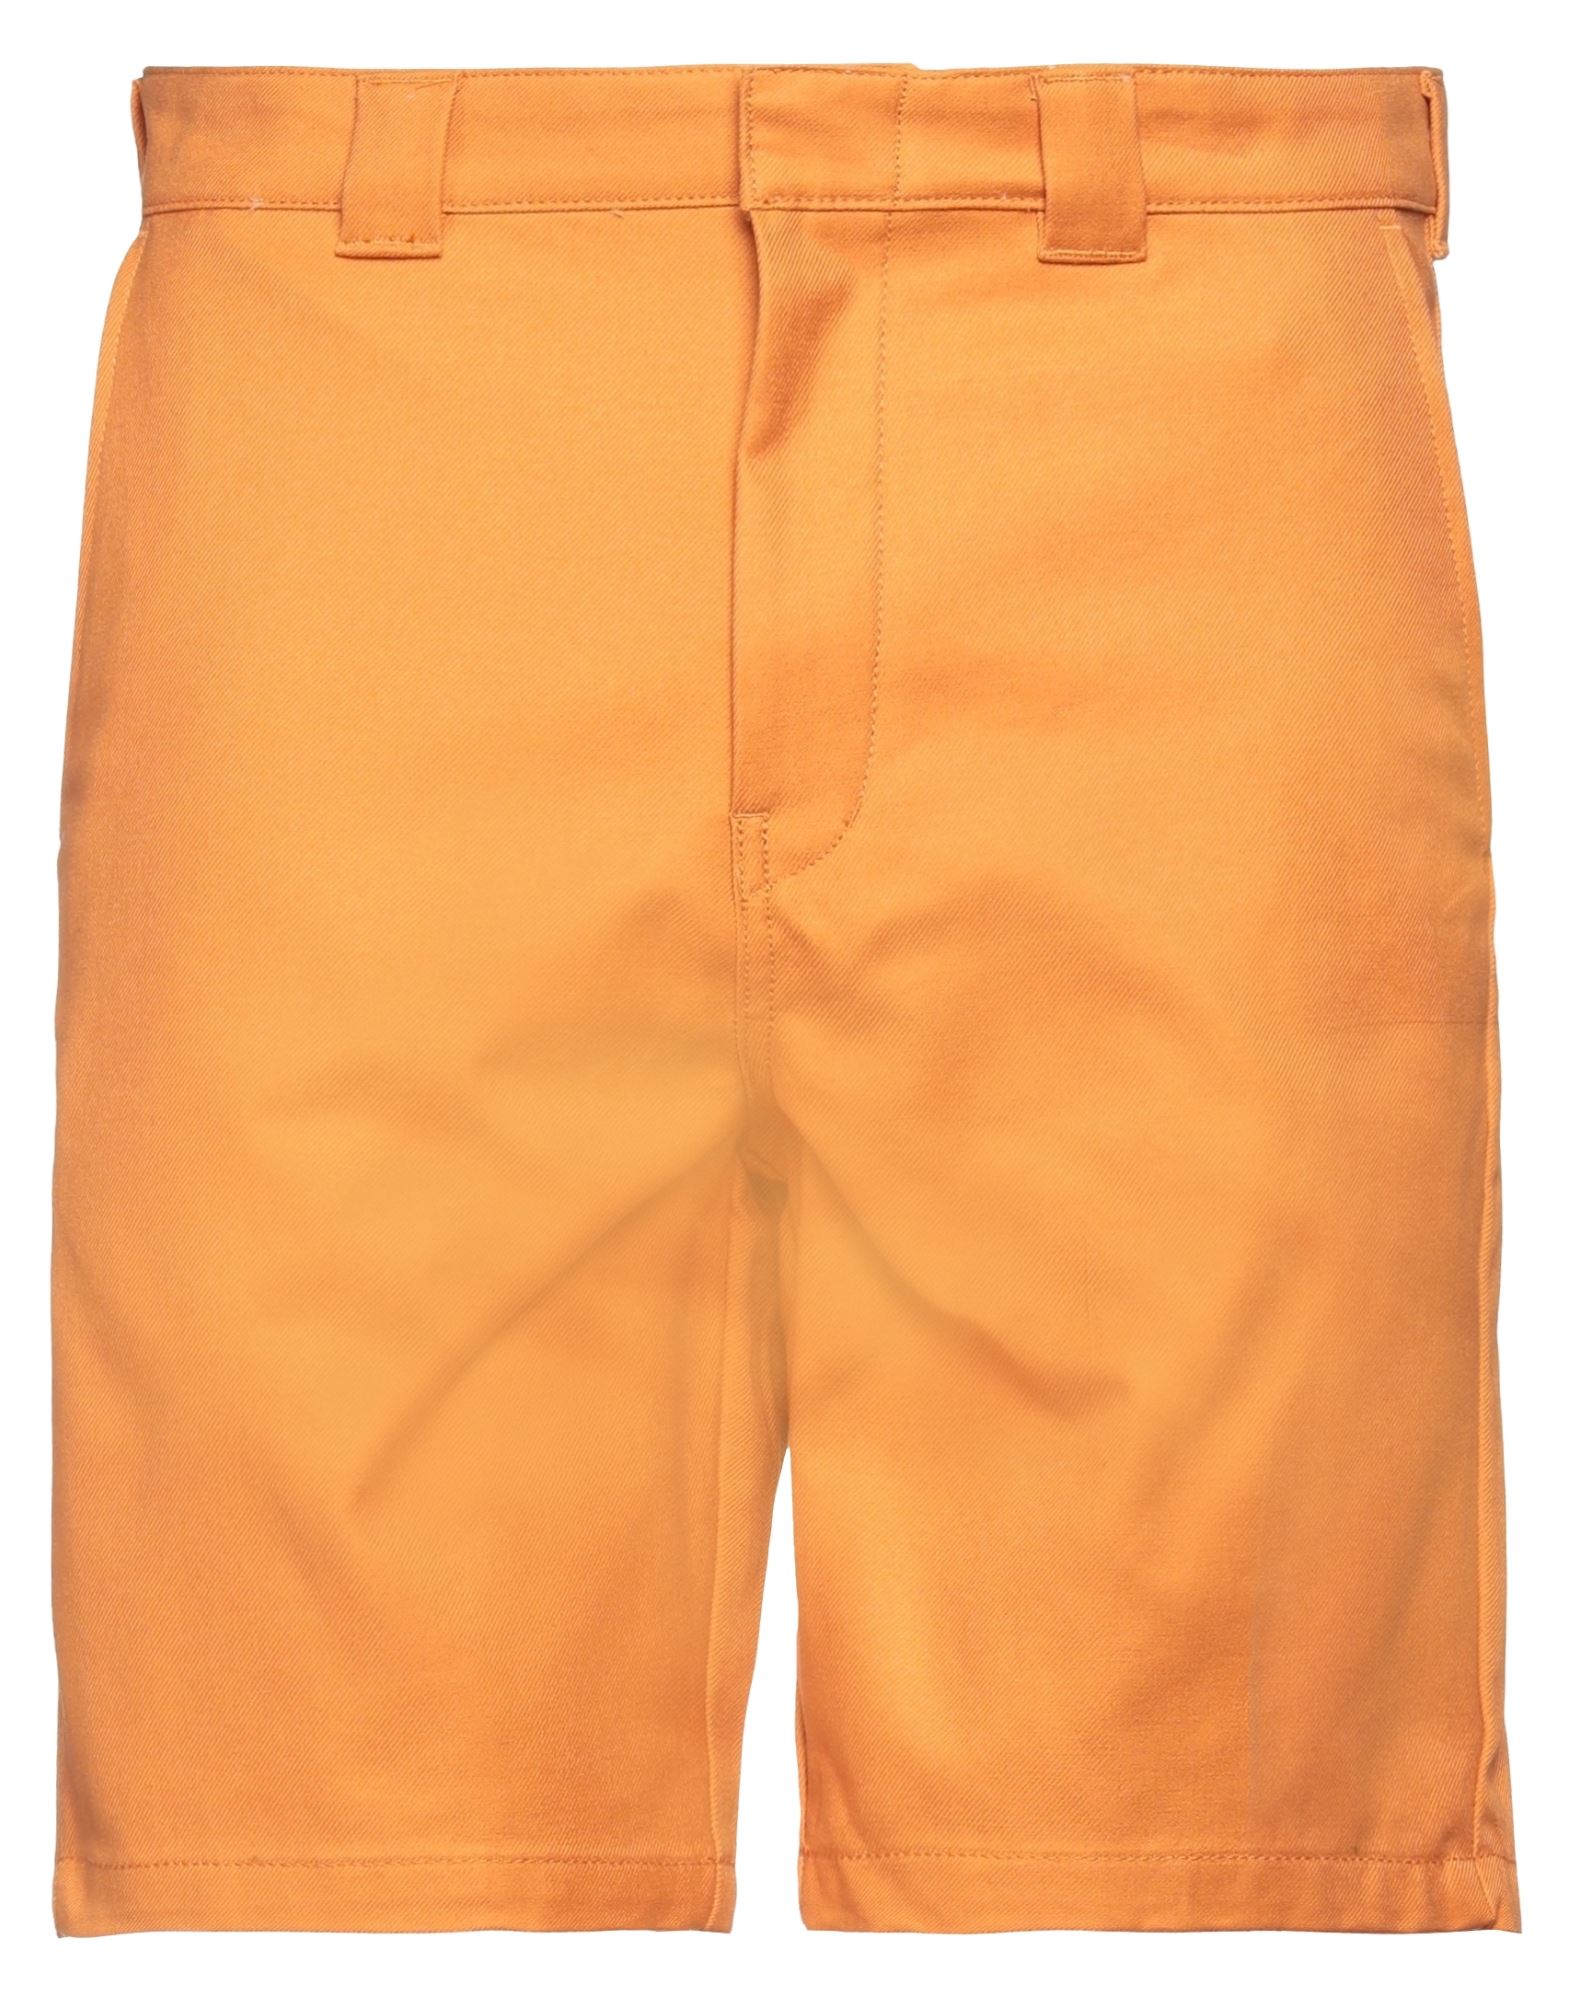 Dickies Man Shorts & Bermuda Shorts Orange Size 29 Cotton